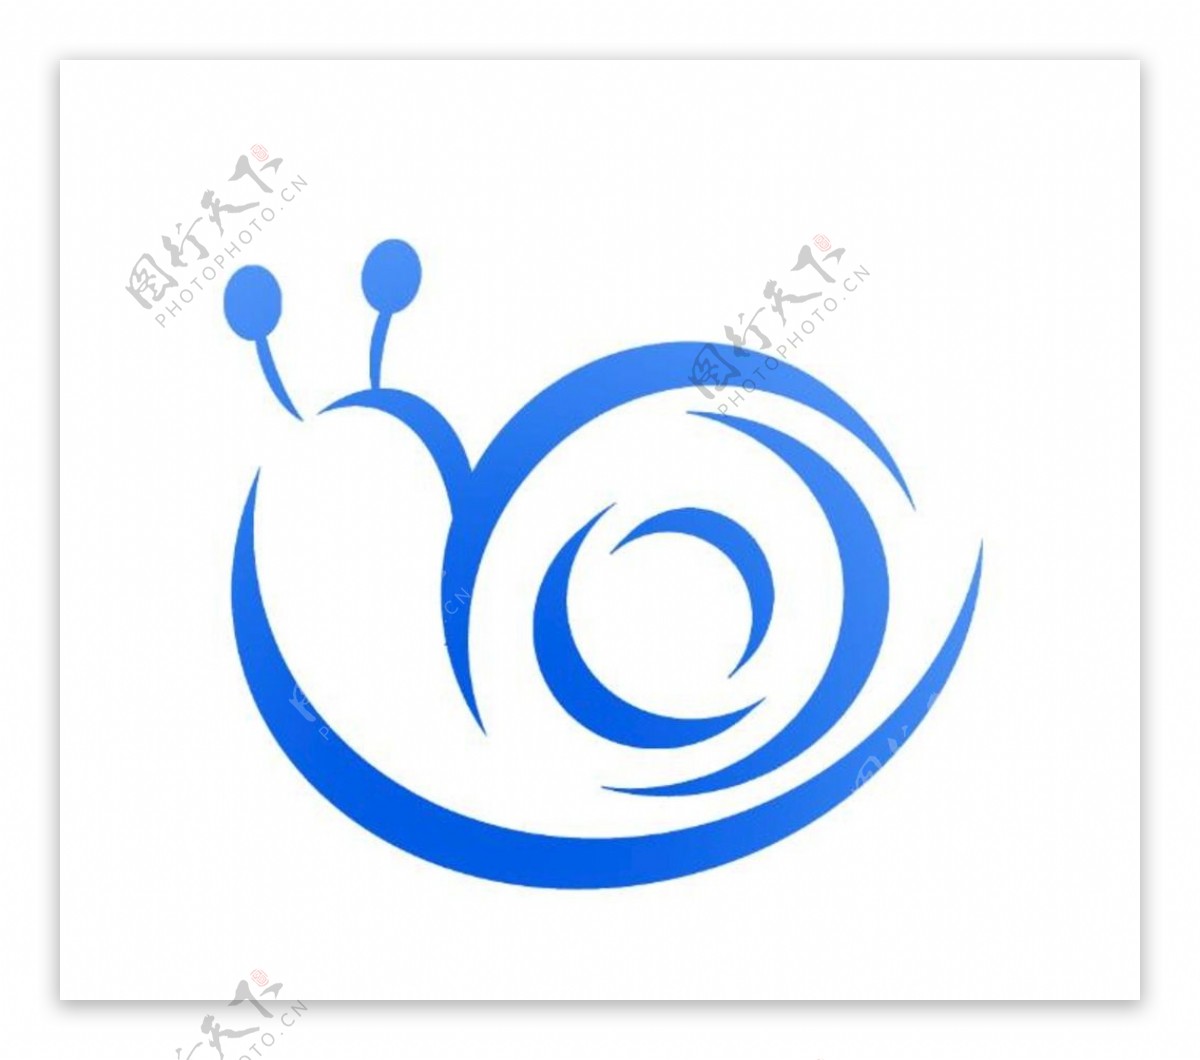 蓝色蜗牛logo